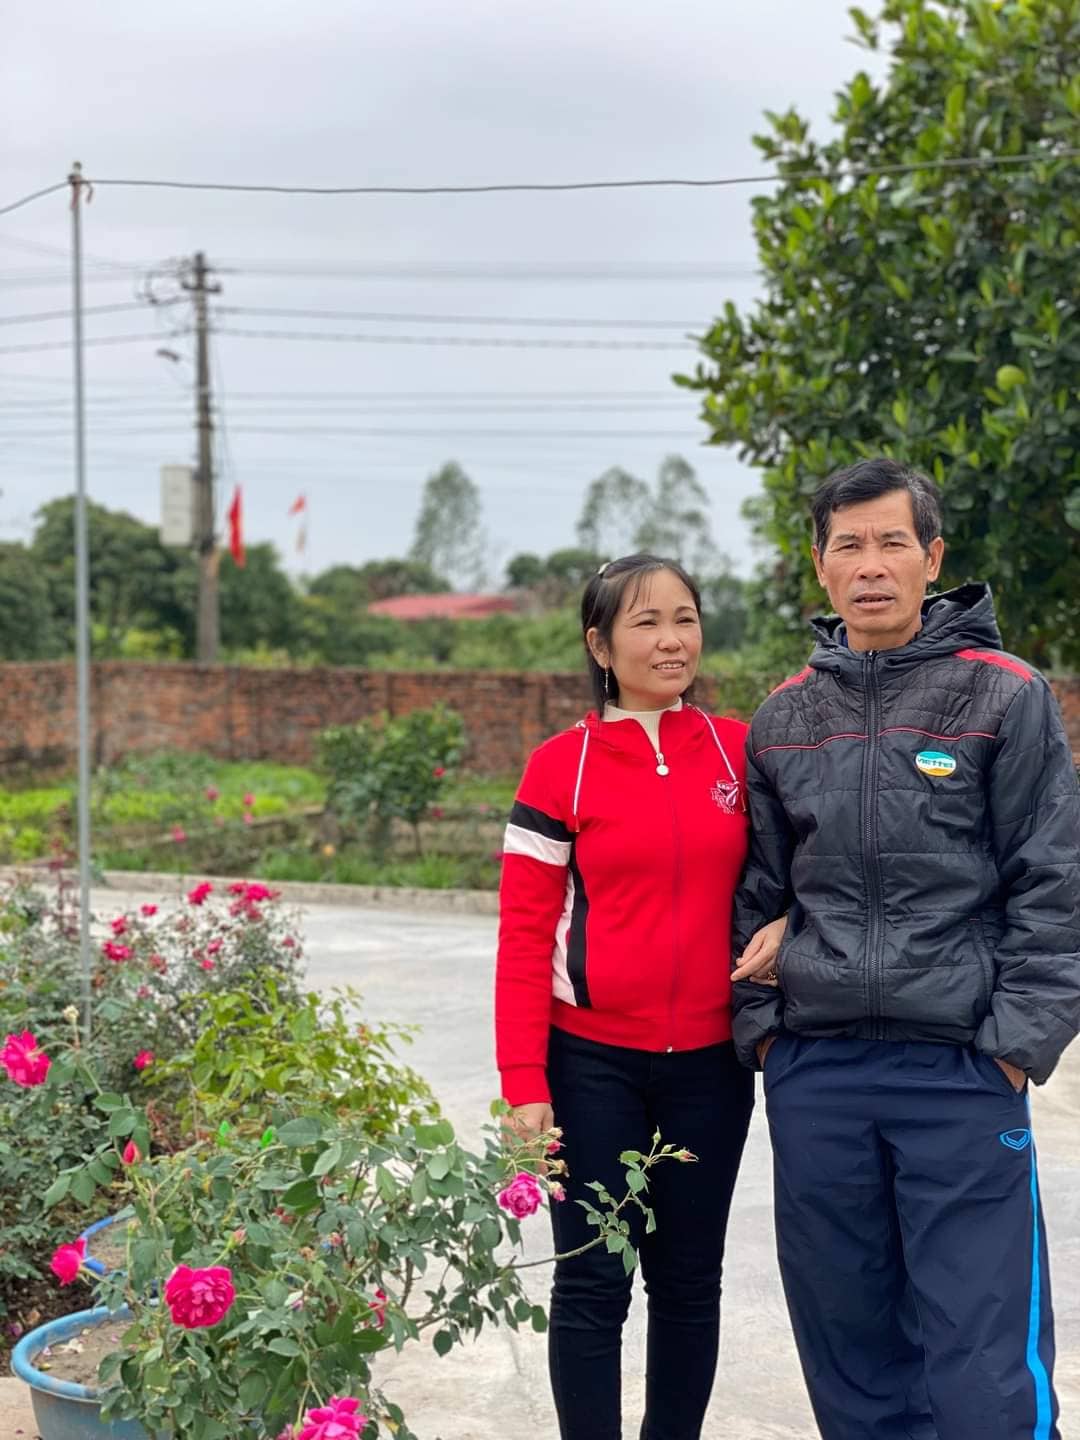 “Người hùng” U23 Việt Nam Nhâm Mạnh Dũng – niềm tự hào của người dân quê lúa Thái Bình  - Ảnh 6.